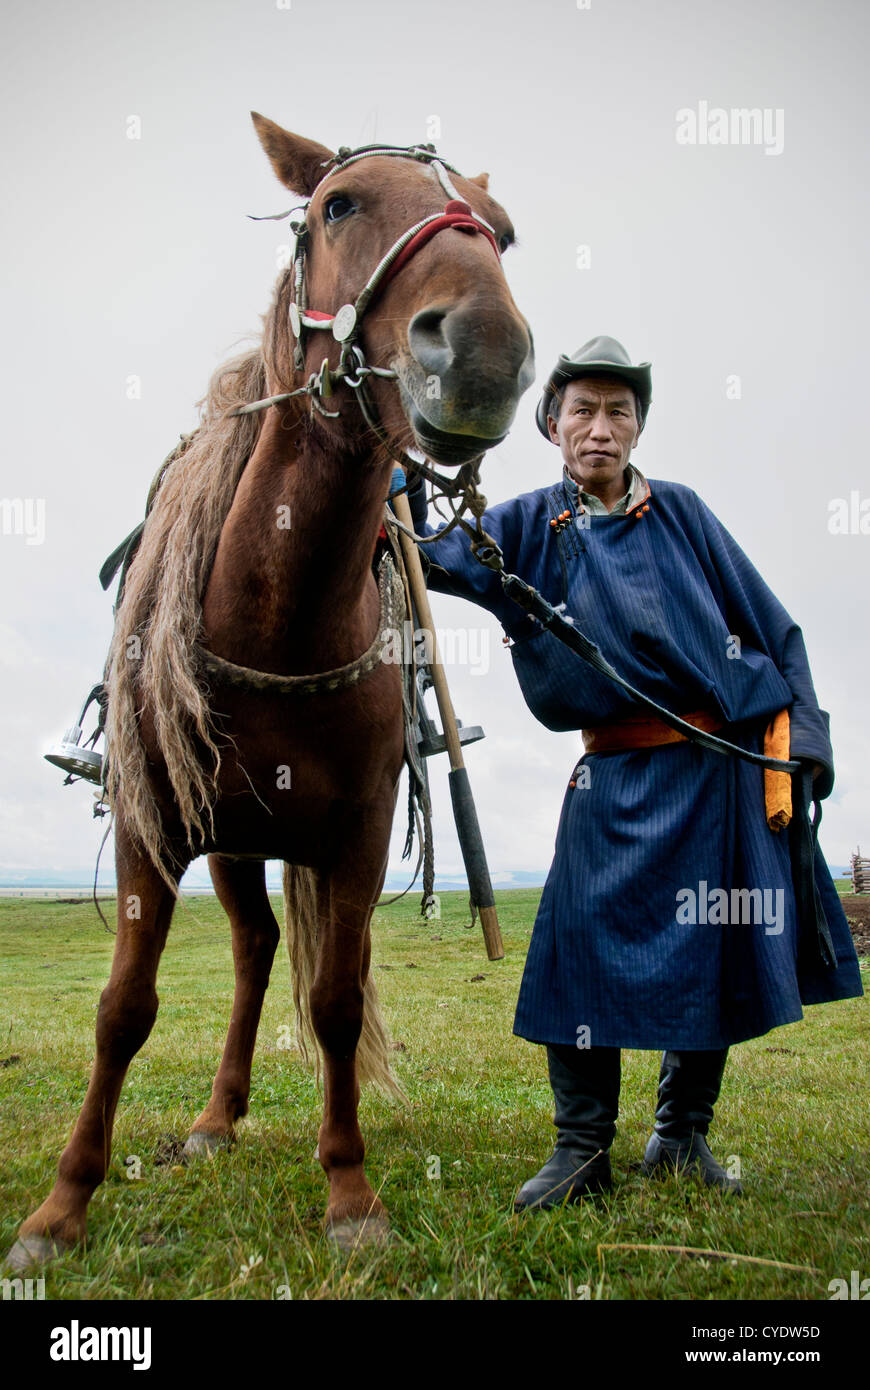 Ritratto di un nomade con il suo cavallo, Khovsgol, nel nord della Mongolia. Foto Stock